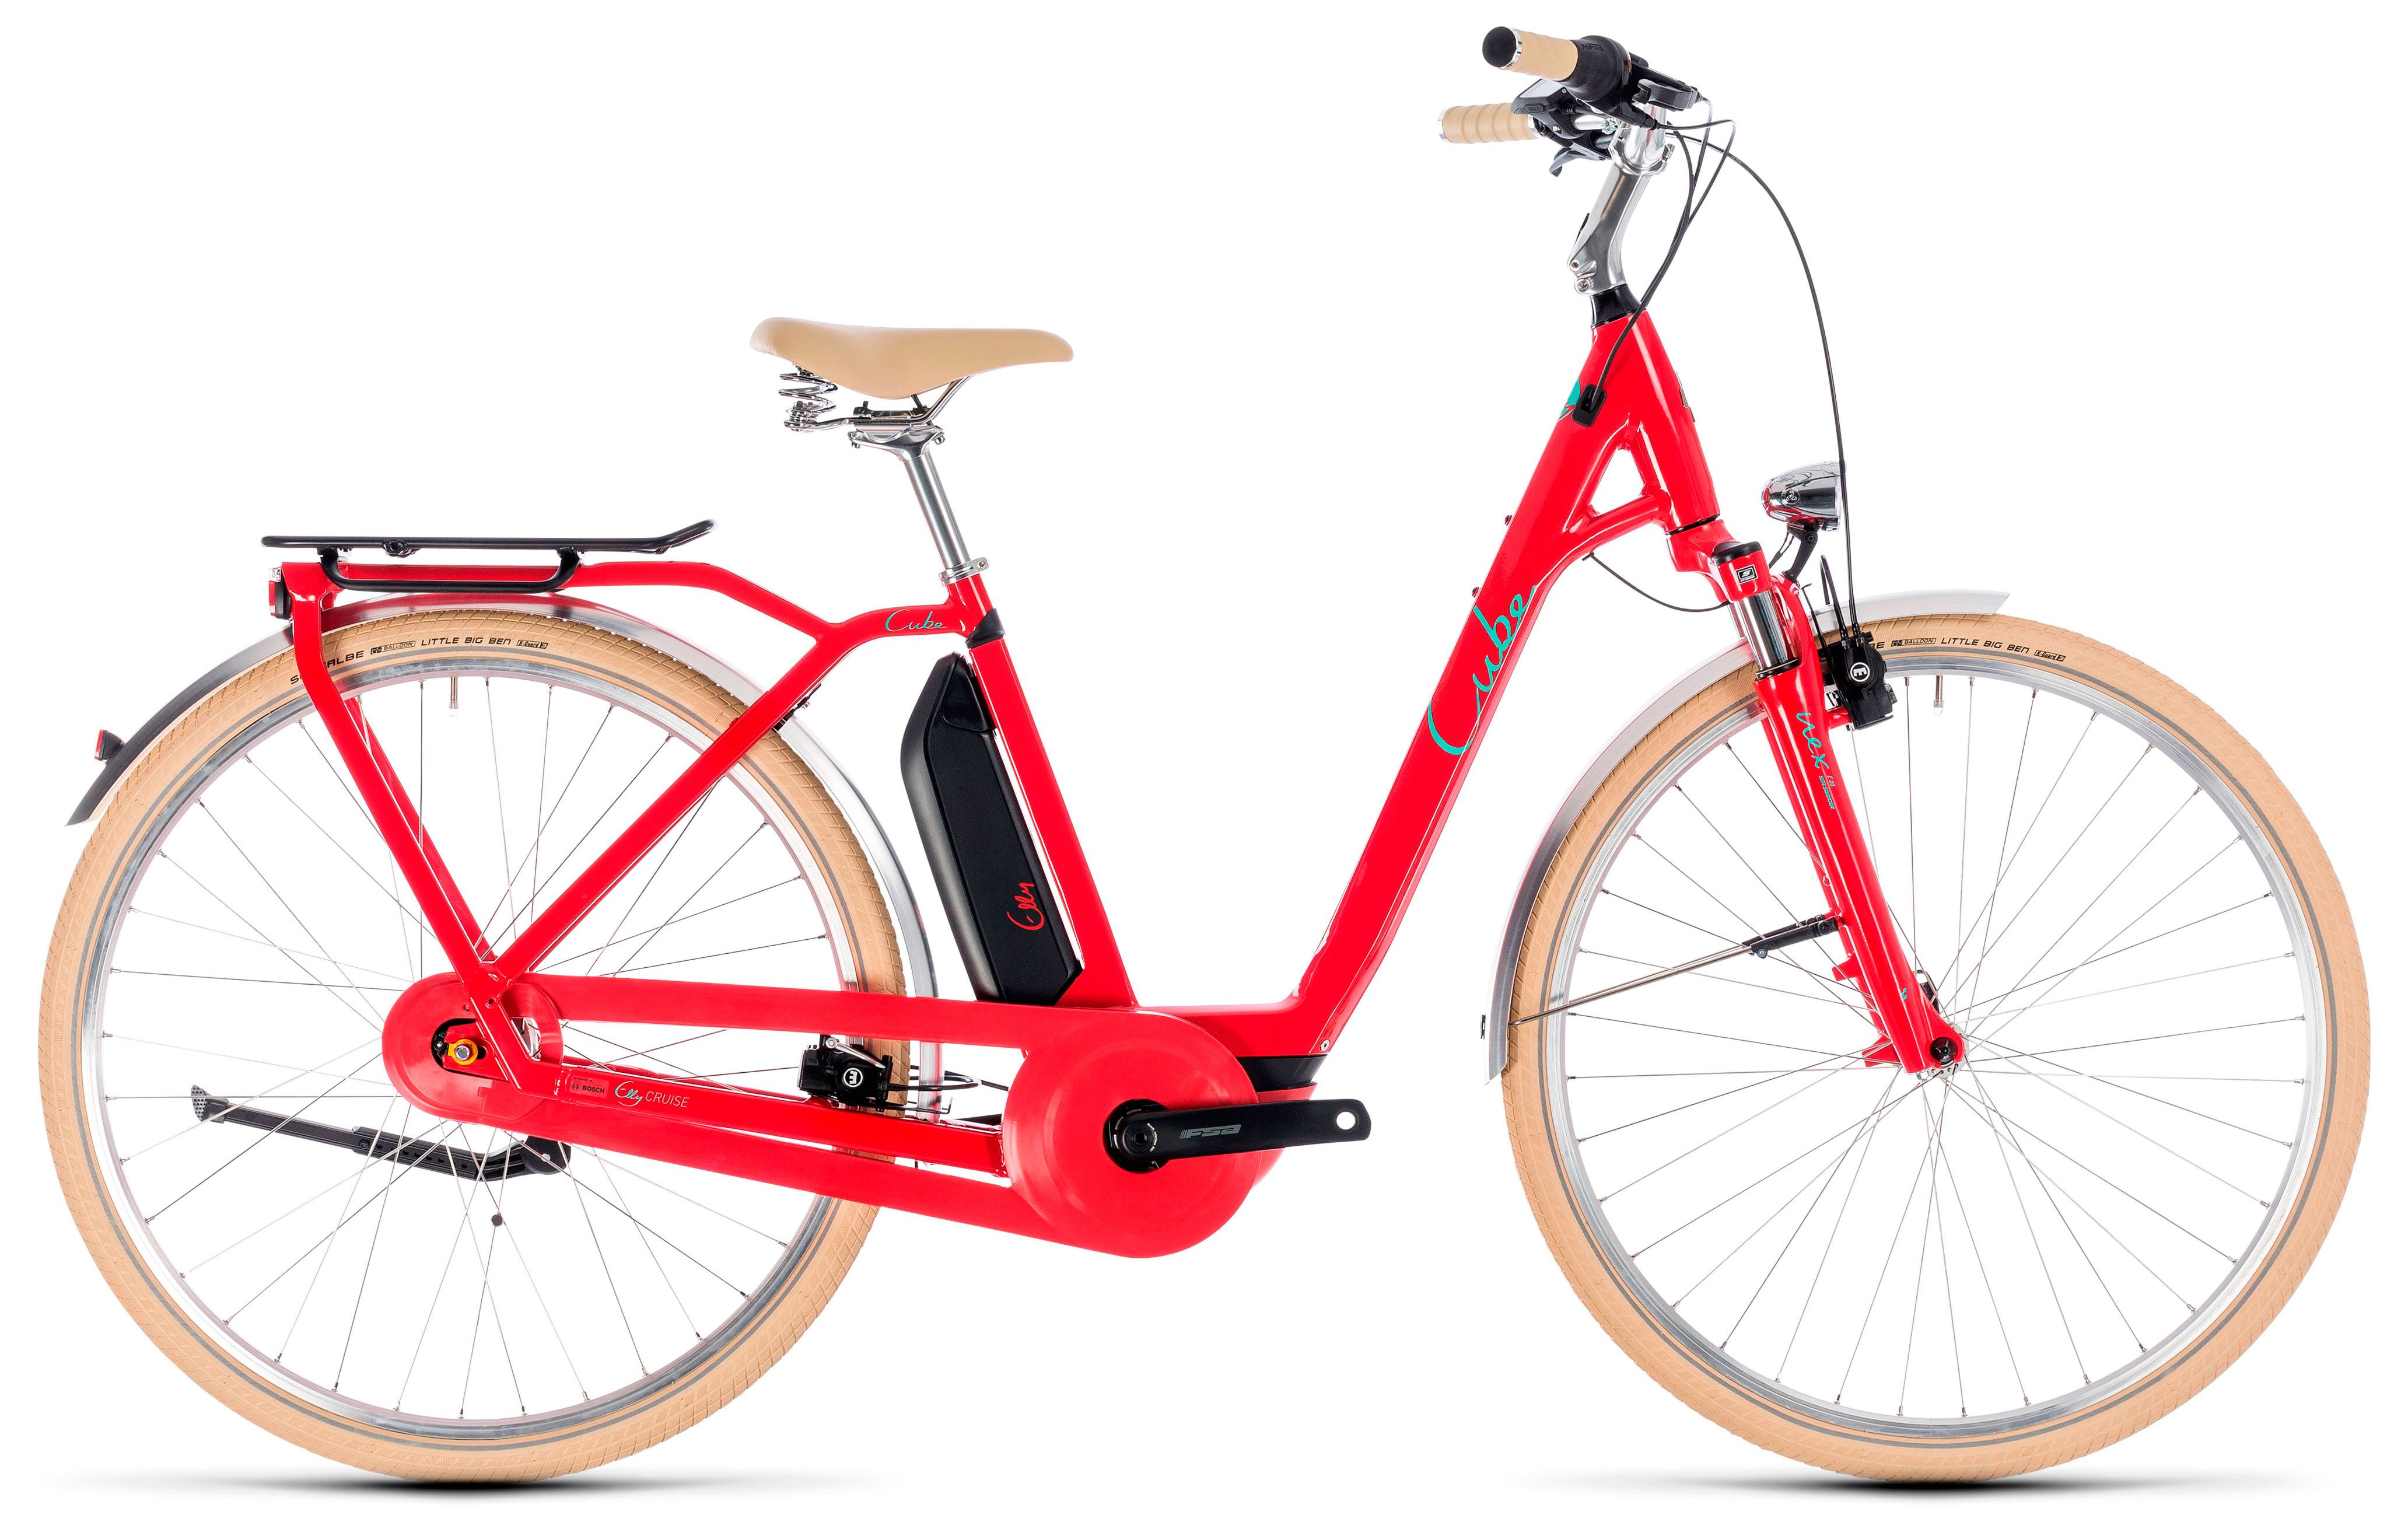  Велосипед трехколесный детский велосипед Cube Elly Cruise Hybrid 400 2018